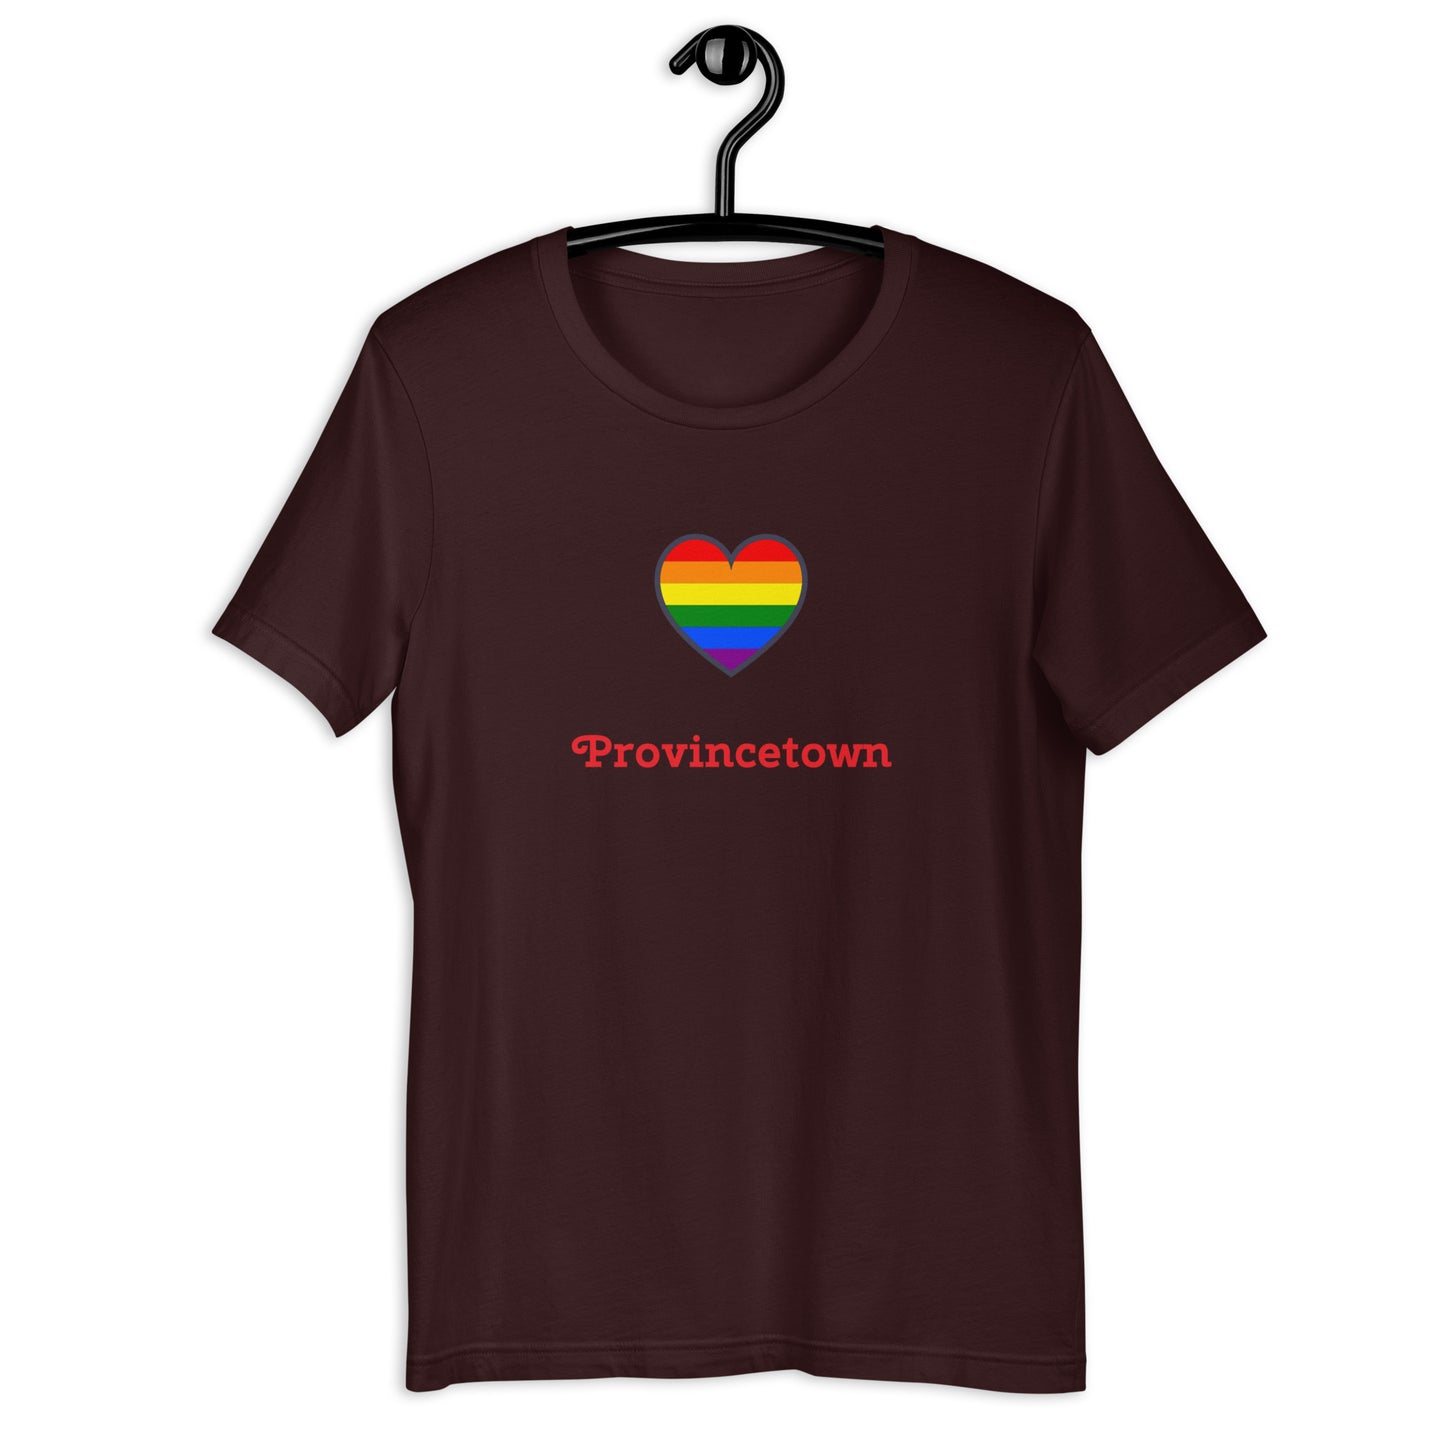 Provincetown unisex t-shirt